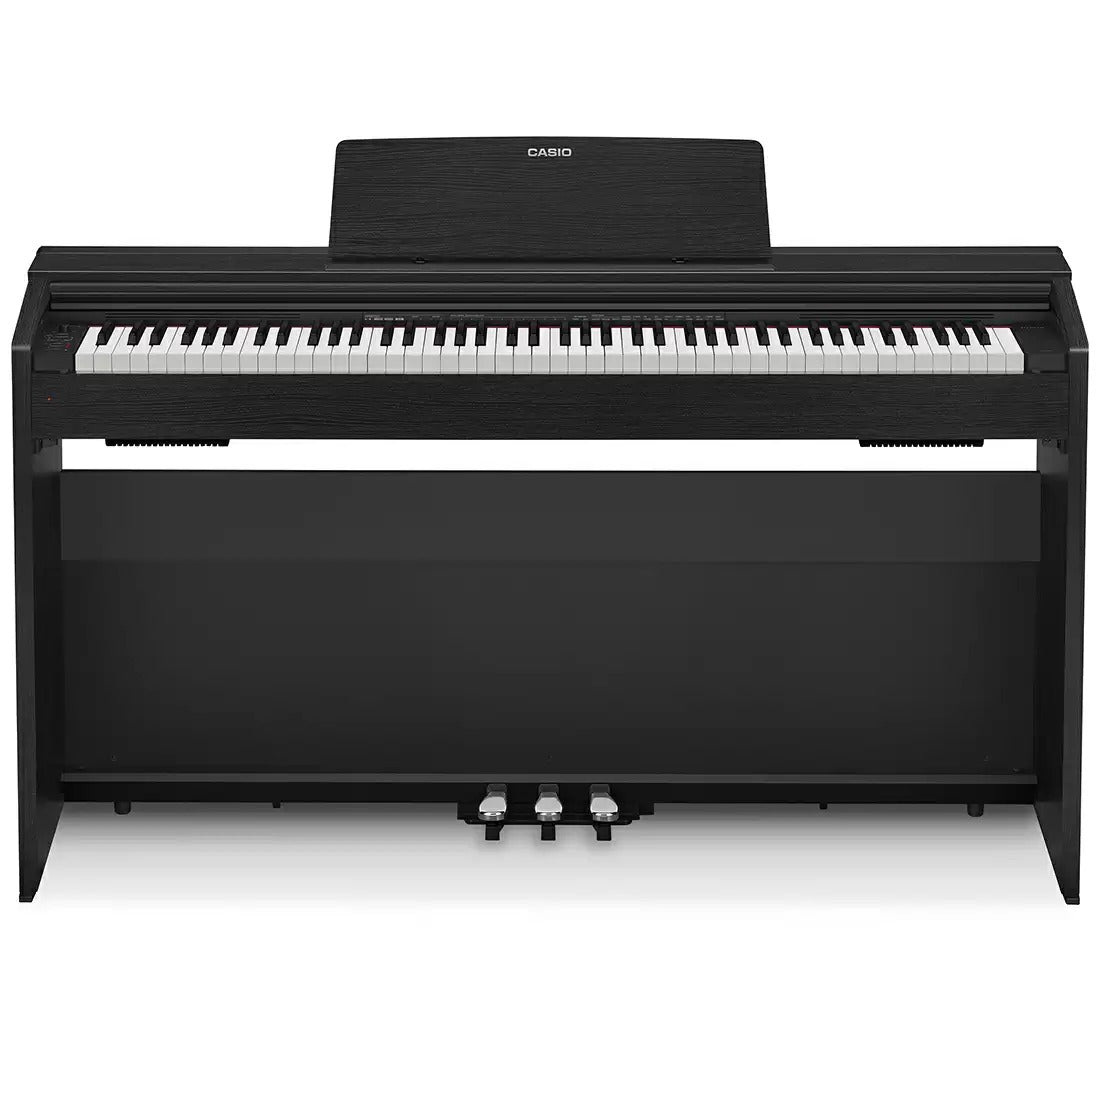 कैसियो पीएक्स 870बीके केपी70ए इंटरमीडिएट पियानो 19 पियानो टोन के साथ